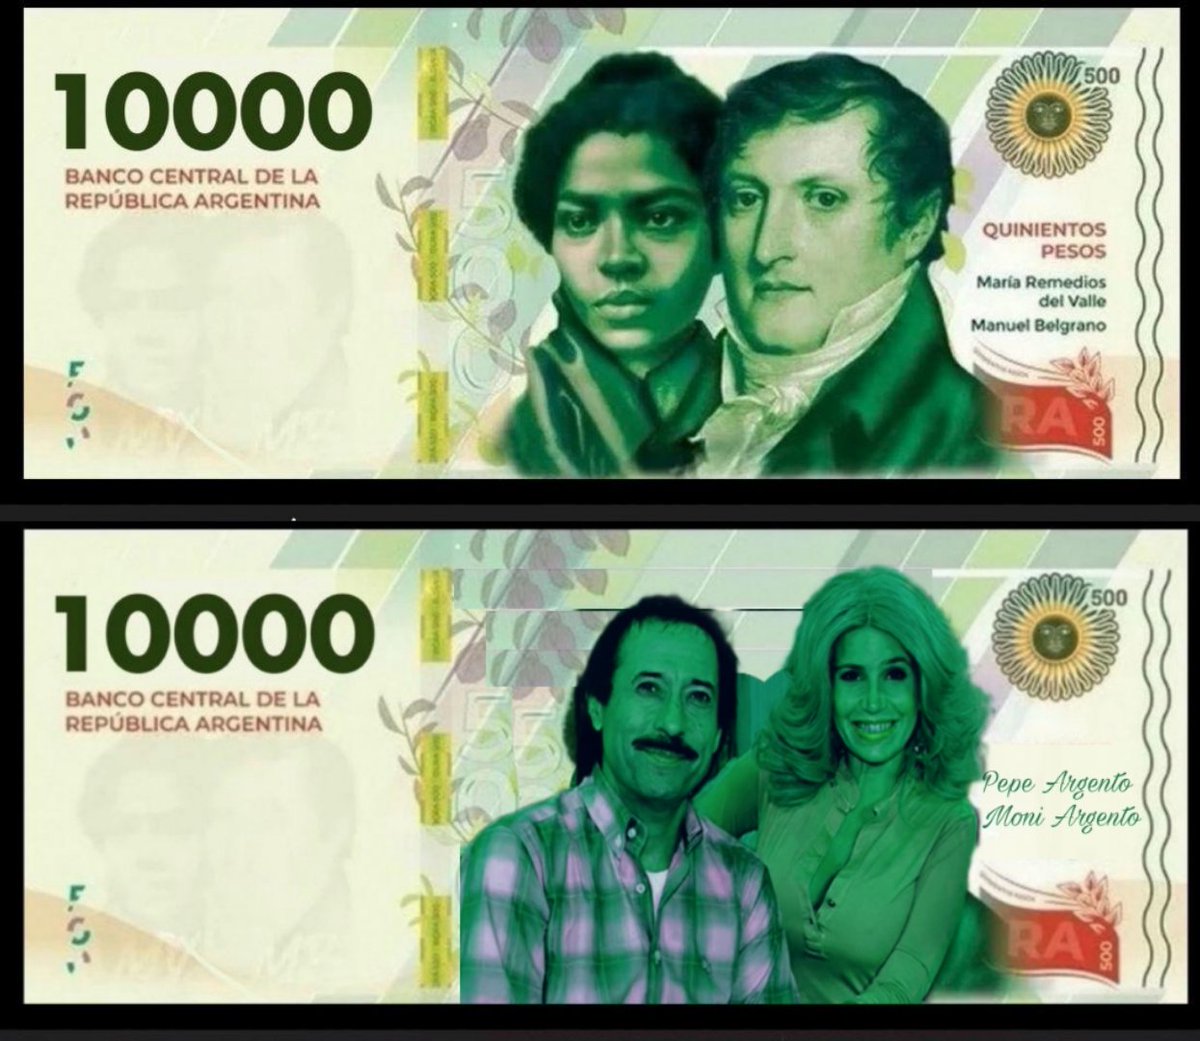 El billete de 10 mil que sacó el Banco Central / el que me hubiera gustado